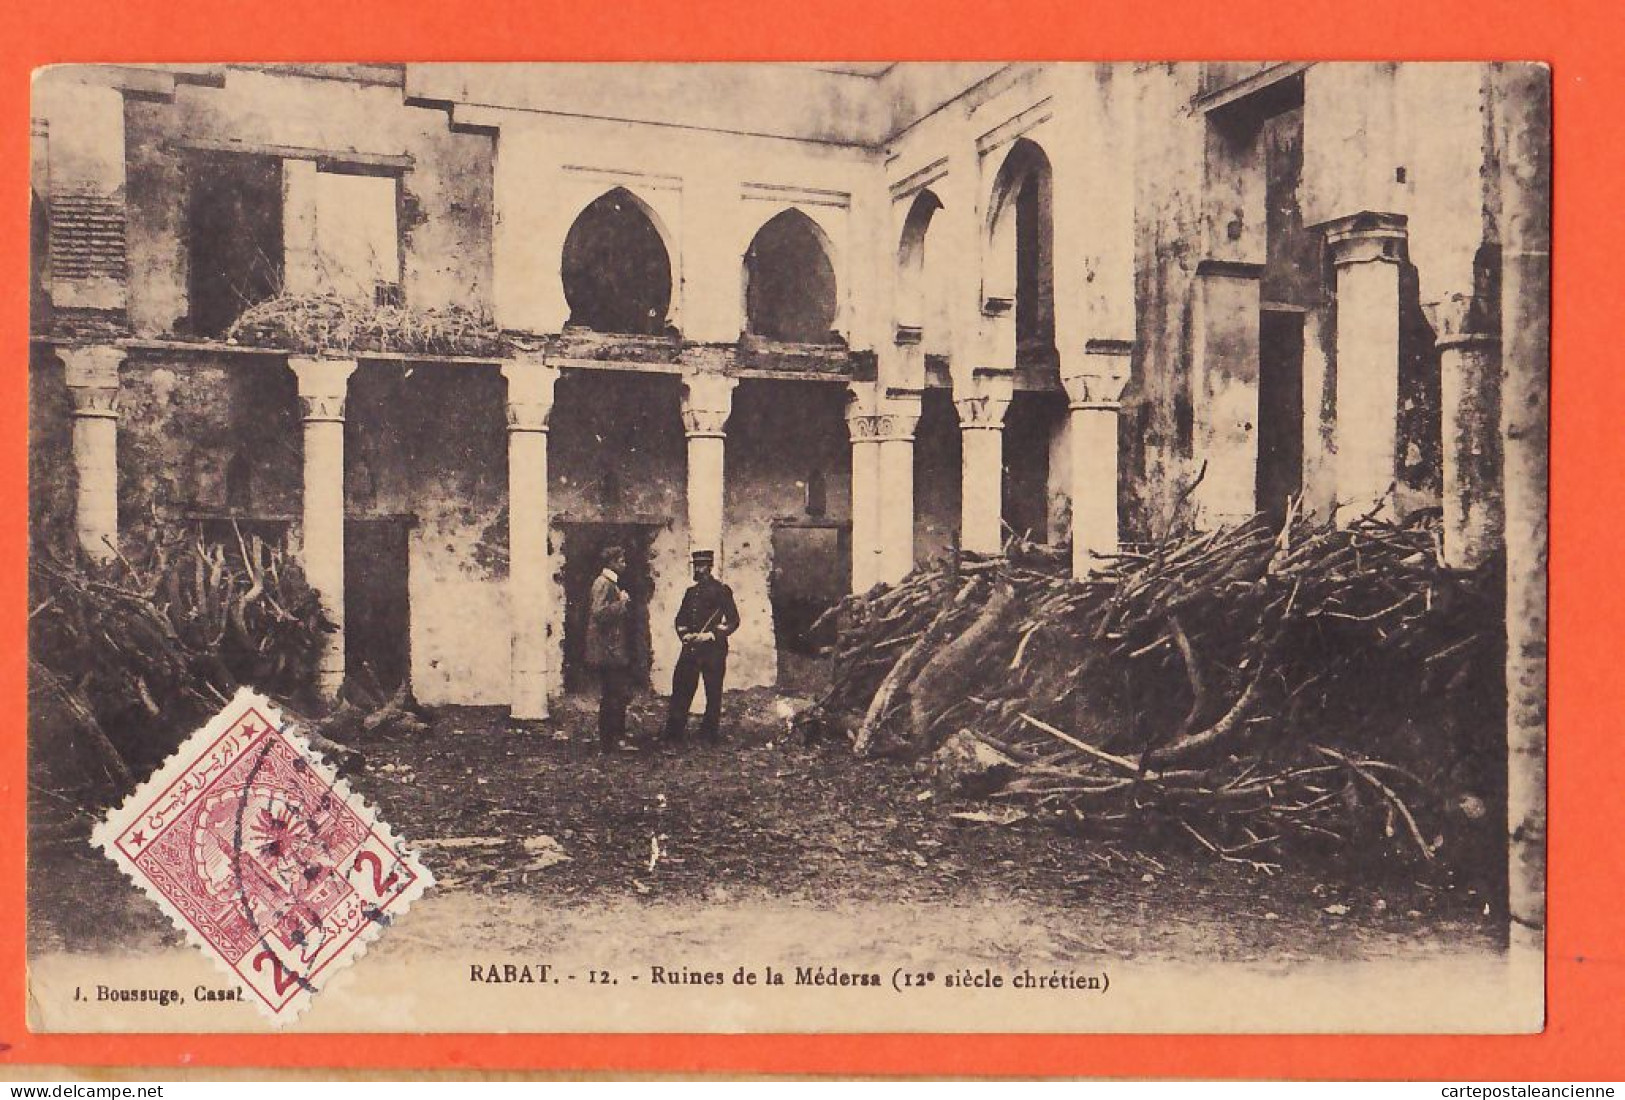 31226 / Lisez Arrivée Drapeaux 14 Juillet RABAT Maroc Ruines MEDERSA 12e Siècle Chrétien 1913 à Laurent JENNY -BOUSSUGE - Rabat